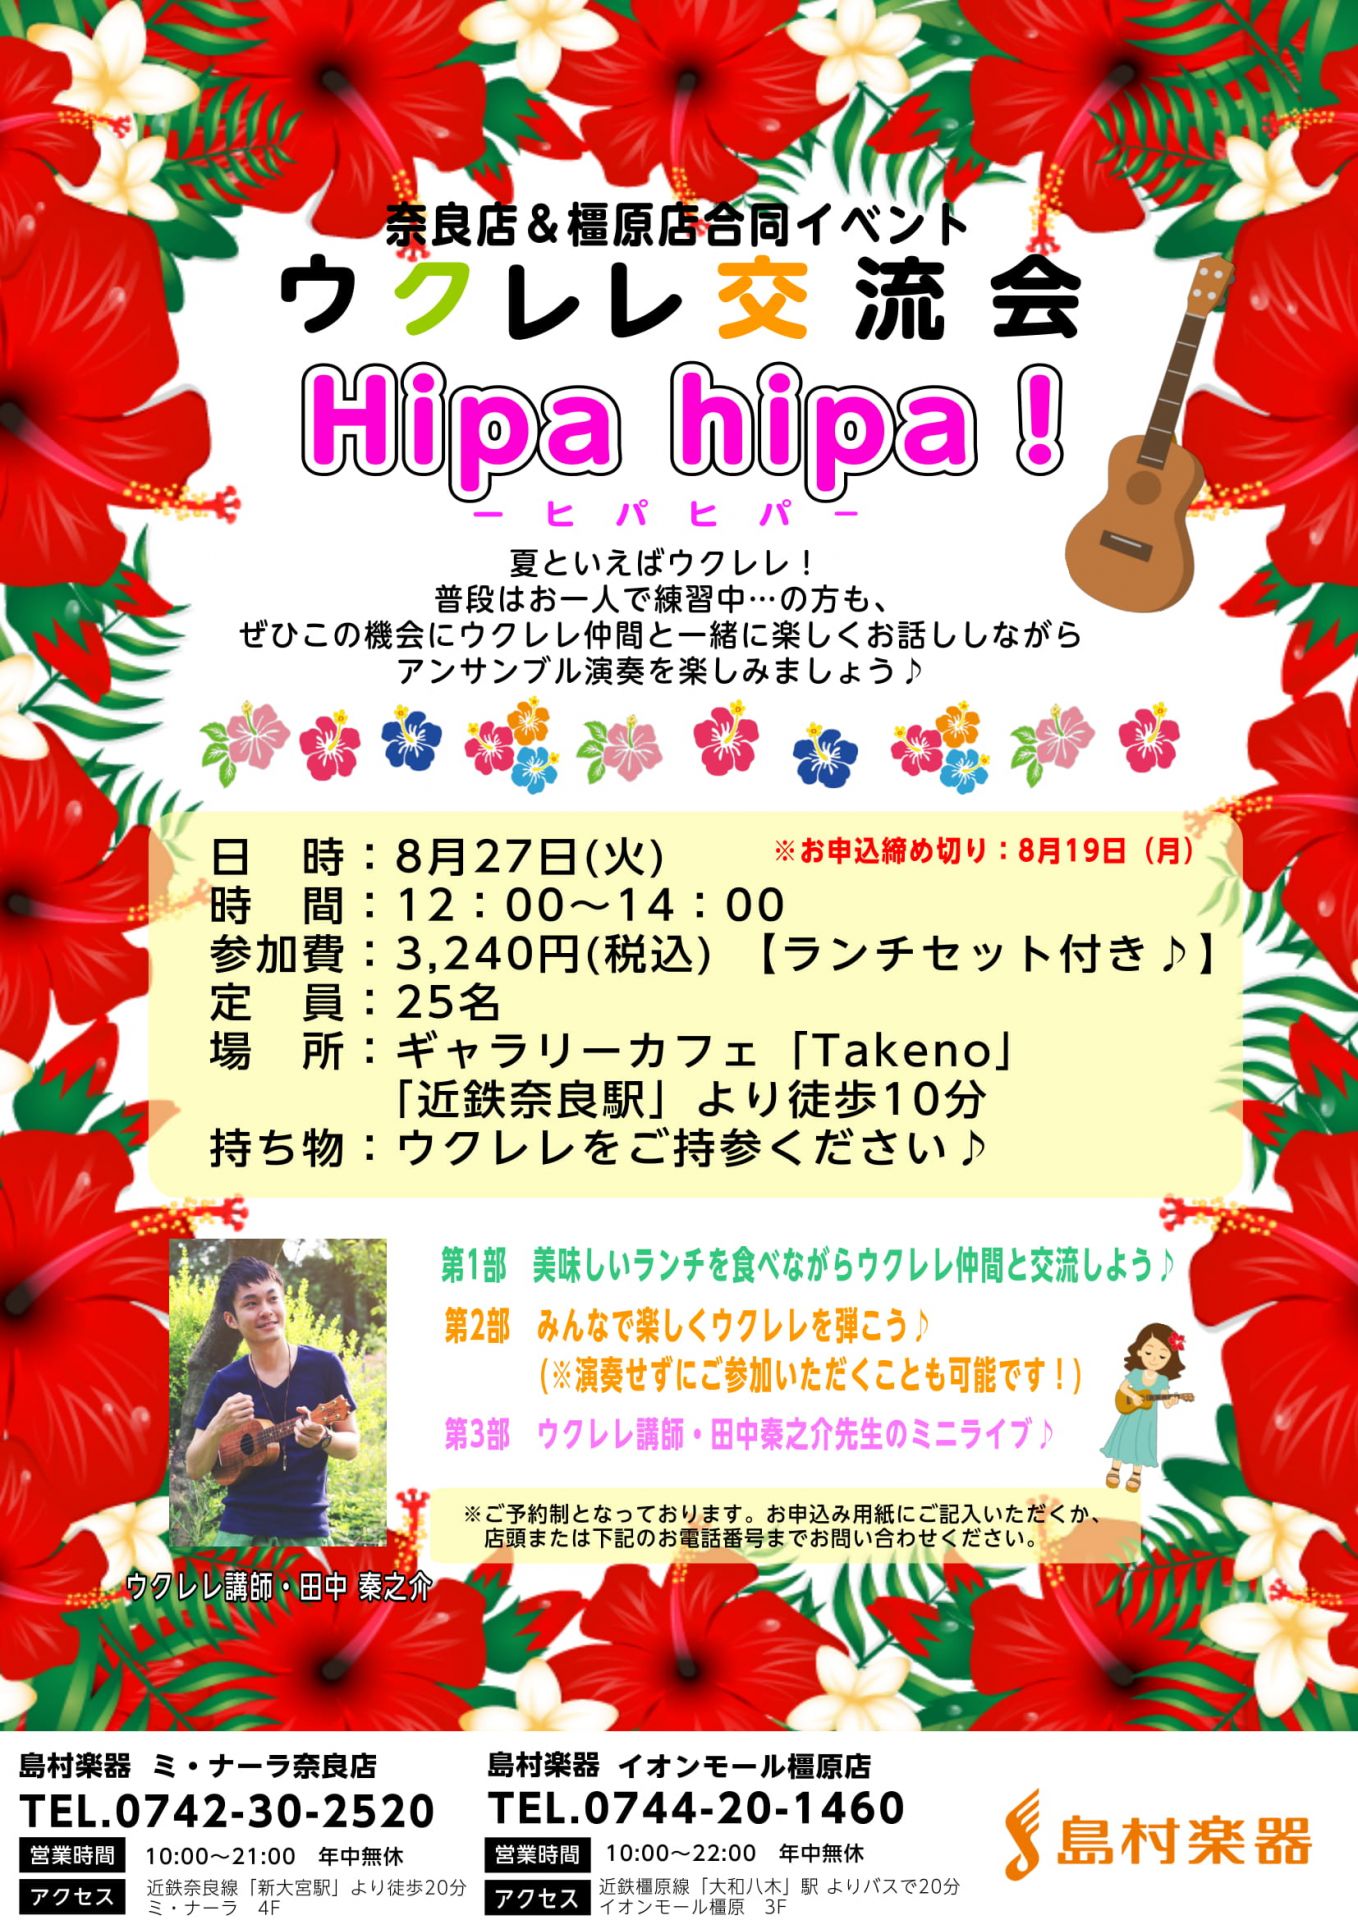 【イベント】ウクレレ交流会“Hipa hipa(ヒパヒパ)”開催します！橿原店&奈良店